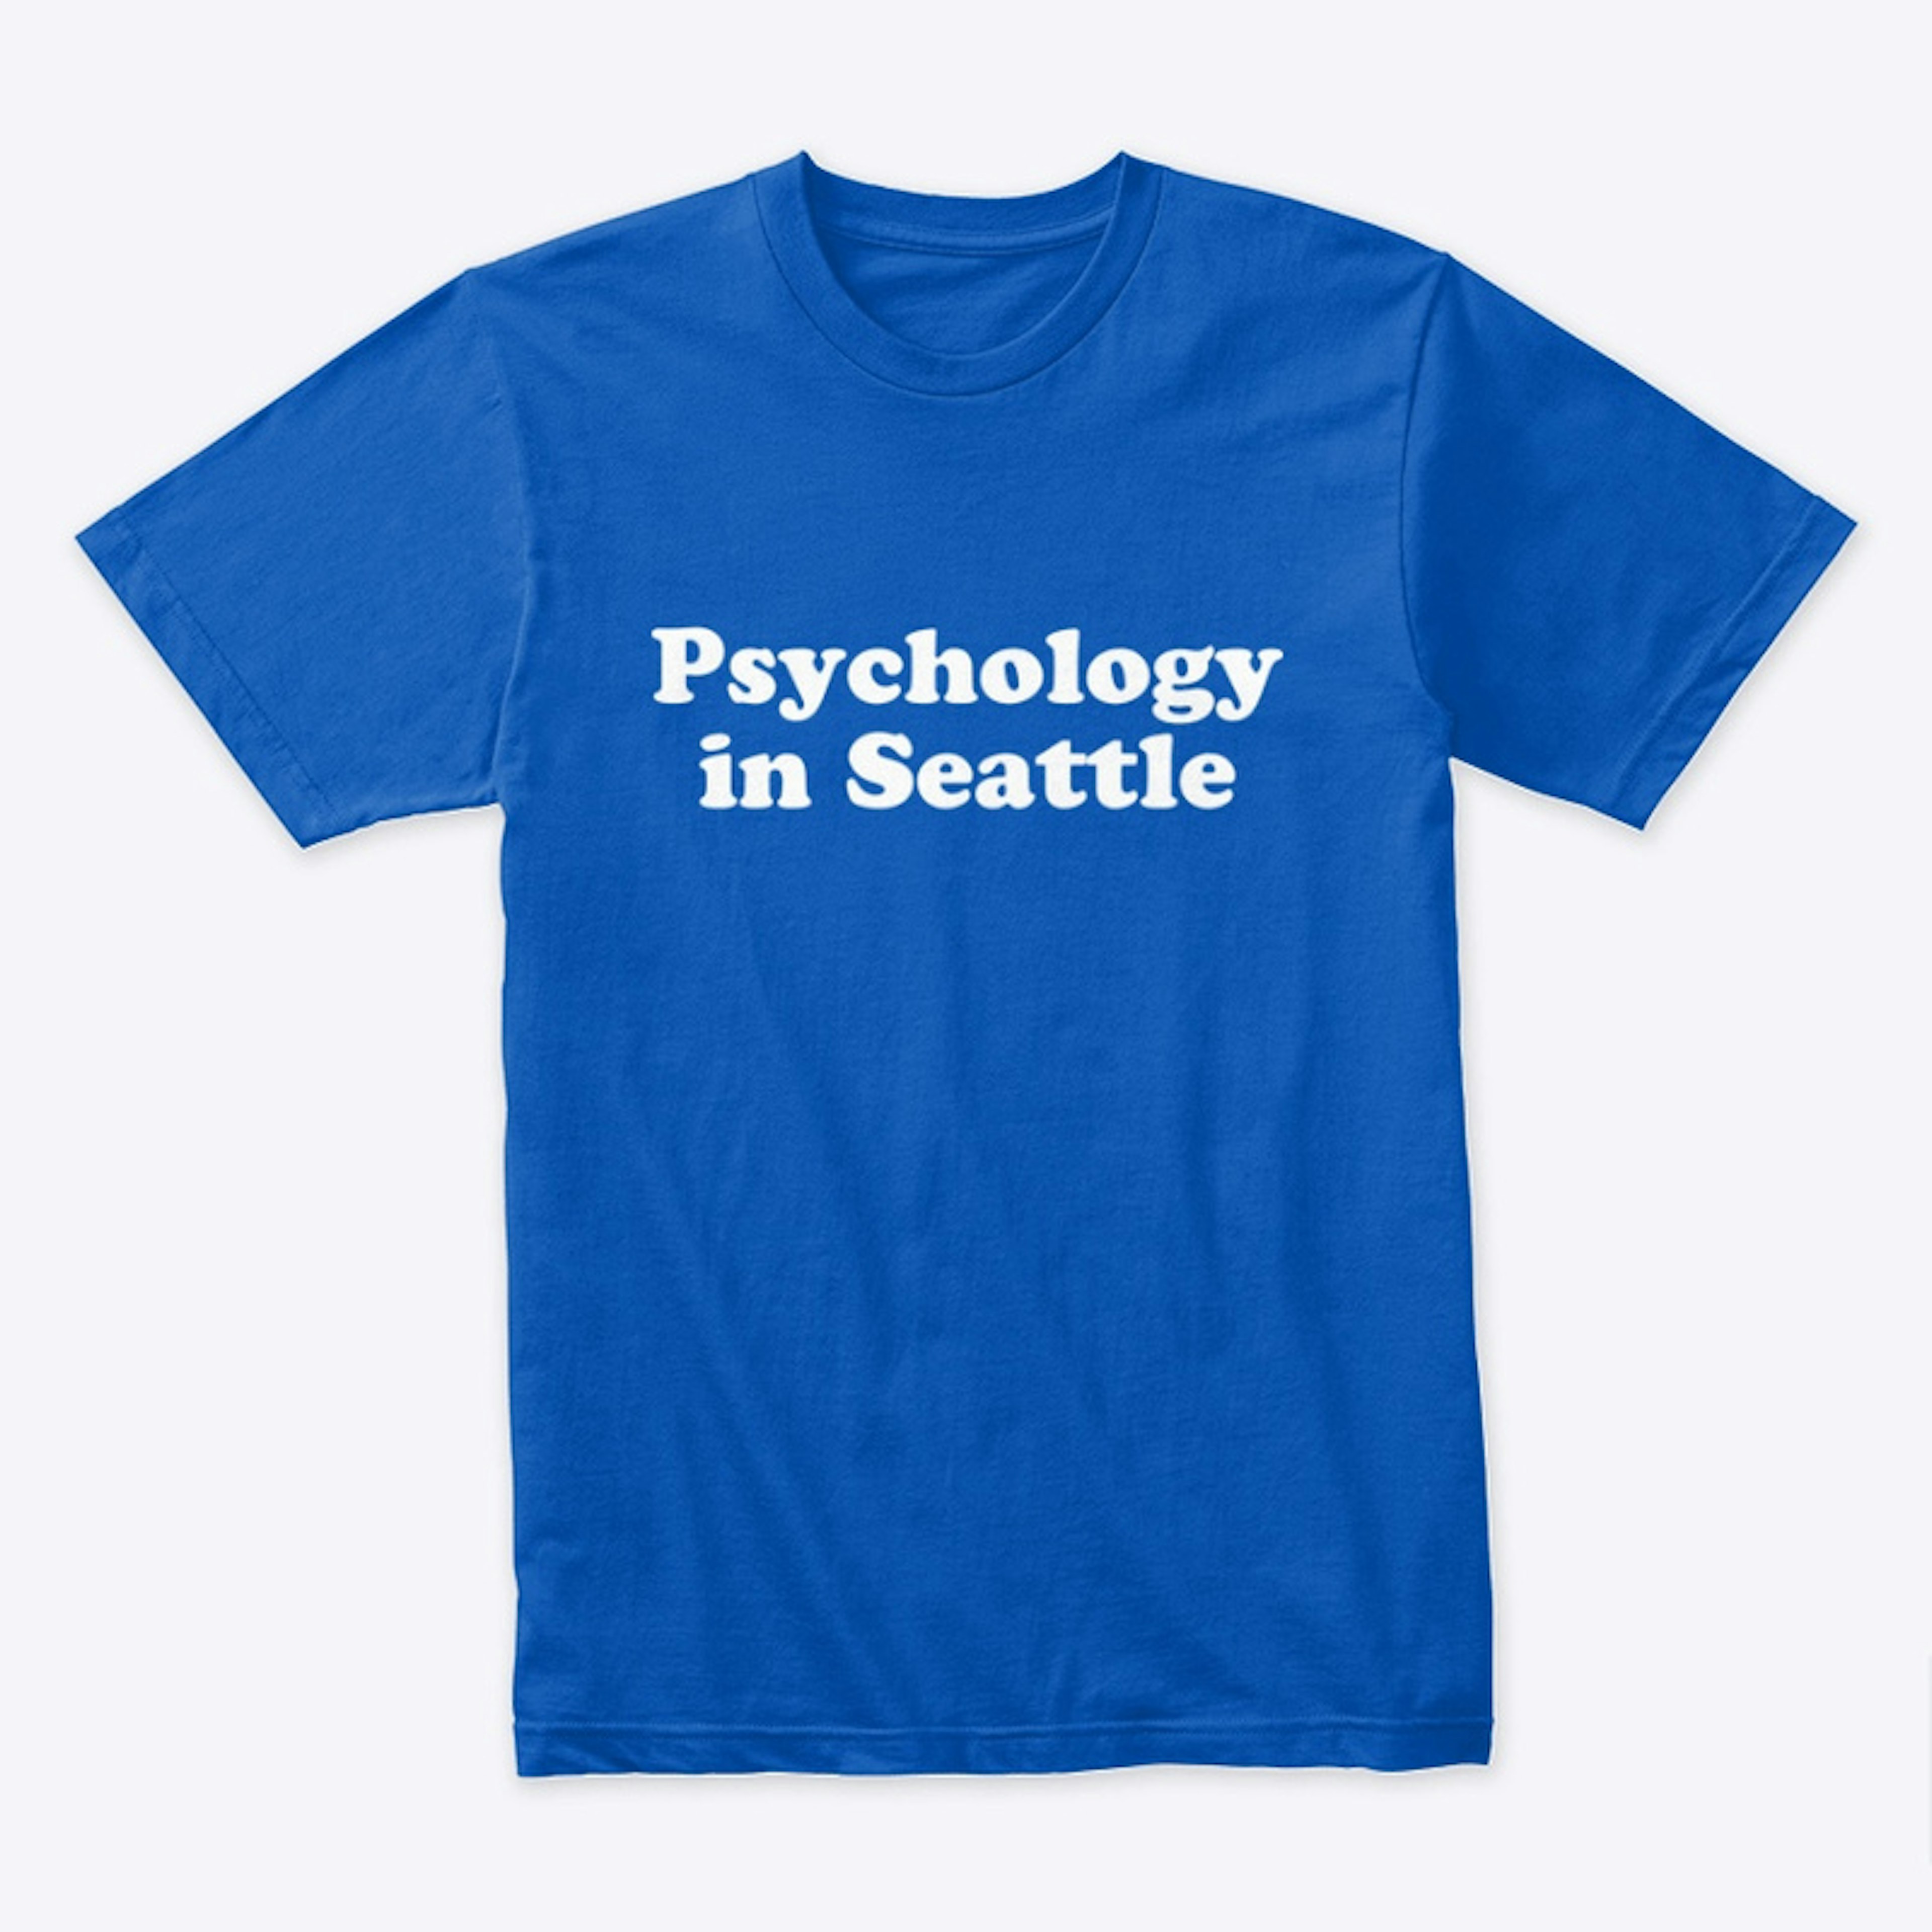 Psychology in Seattle